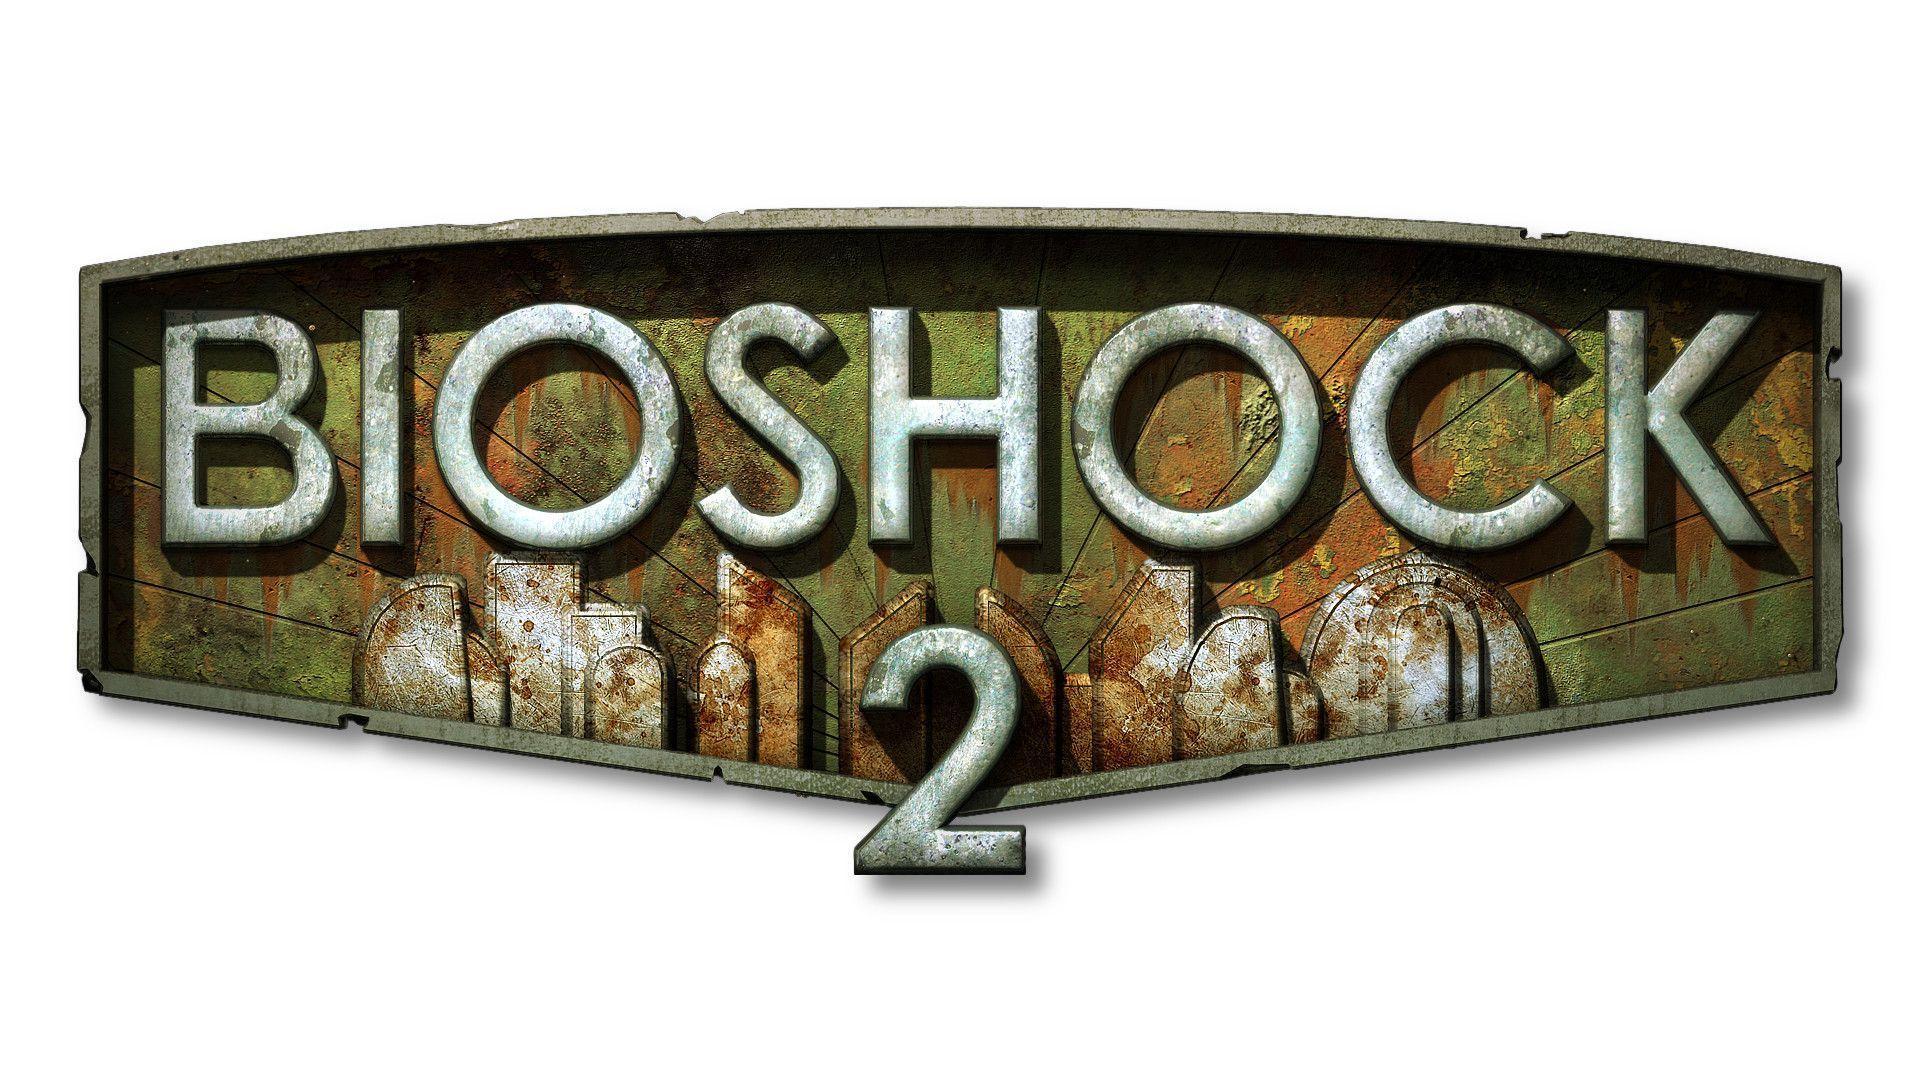 Bioshock 2 Wallpaper, wallpaper, Bioshock 2 Wallpaper HD